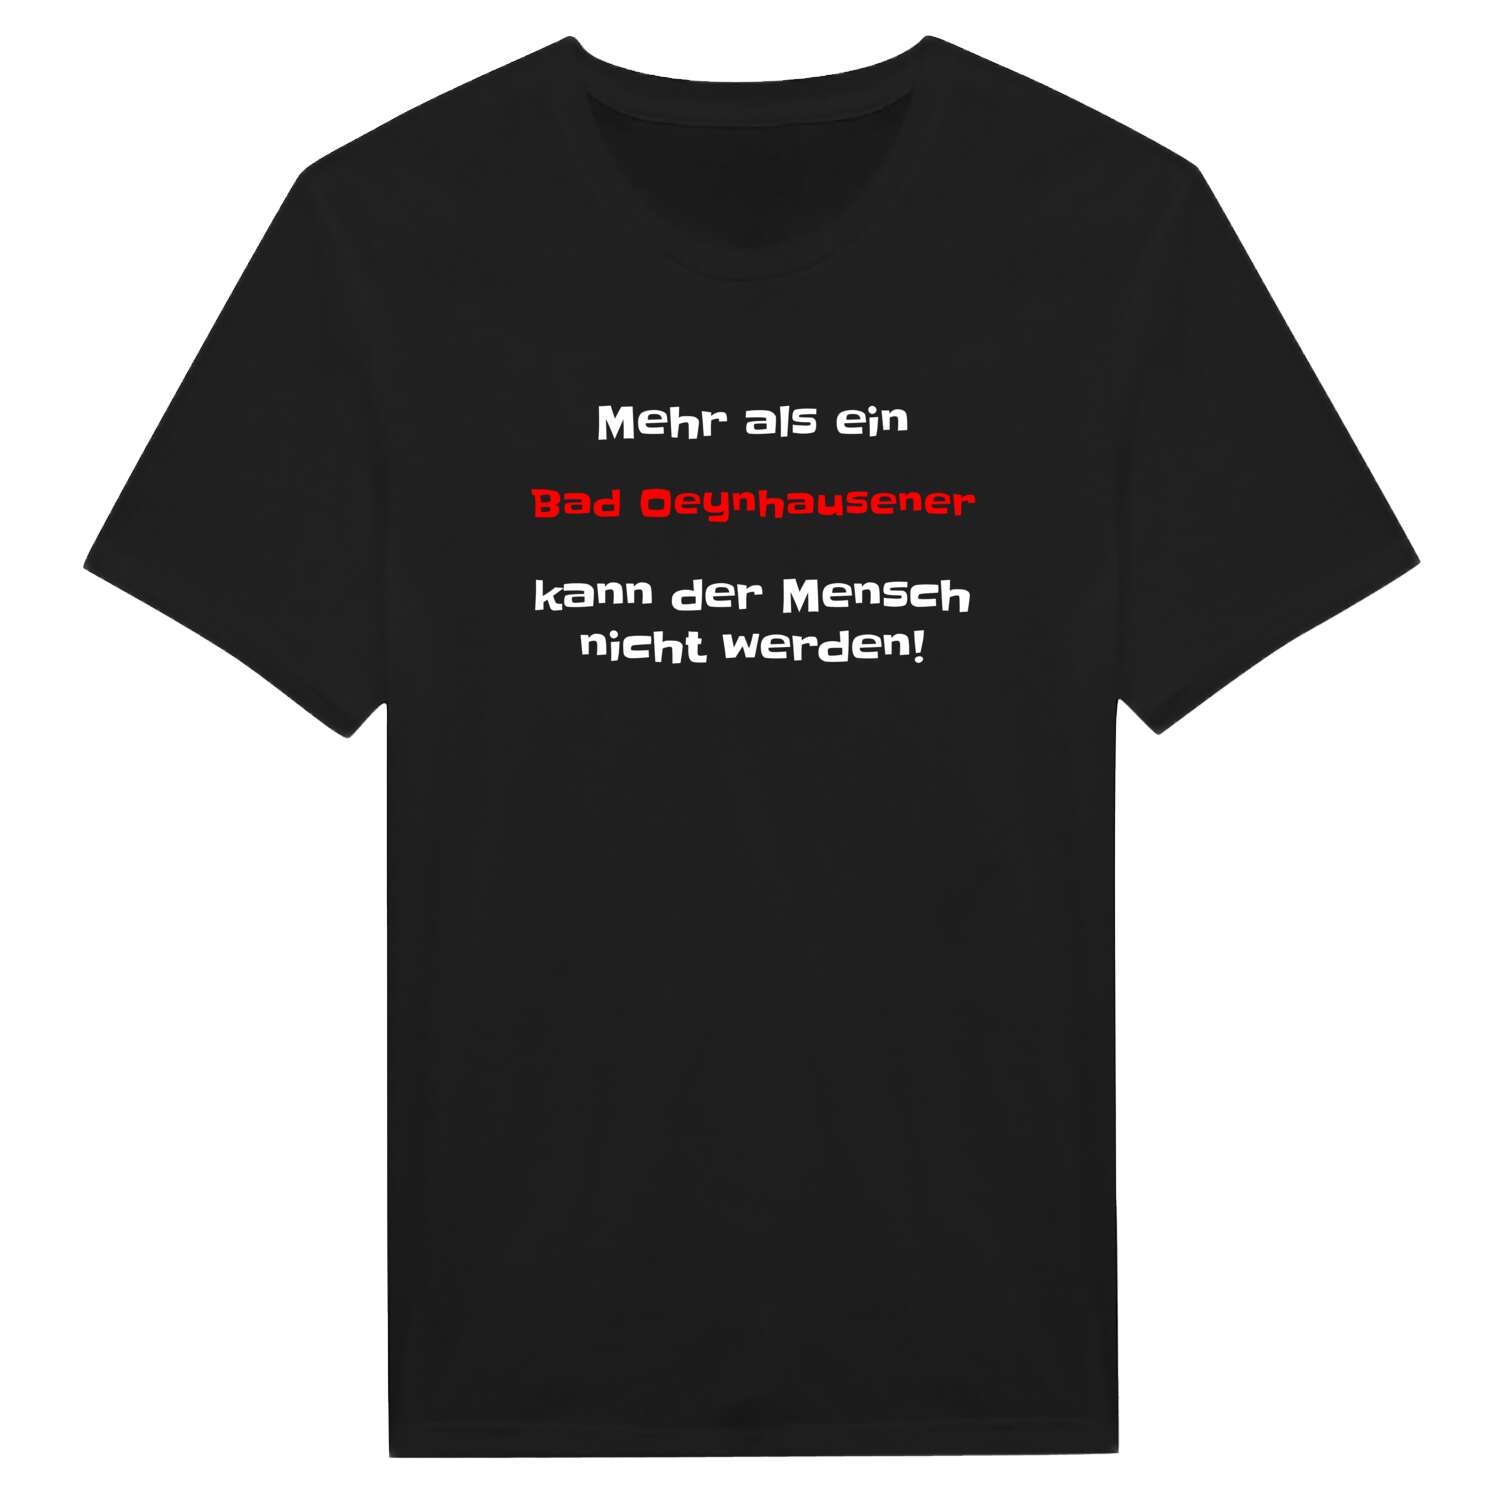 Bad Oeynhausen T-Shirt »Mehr als ein«